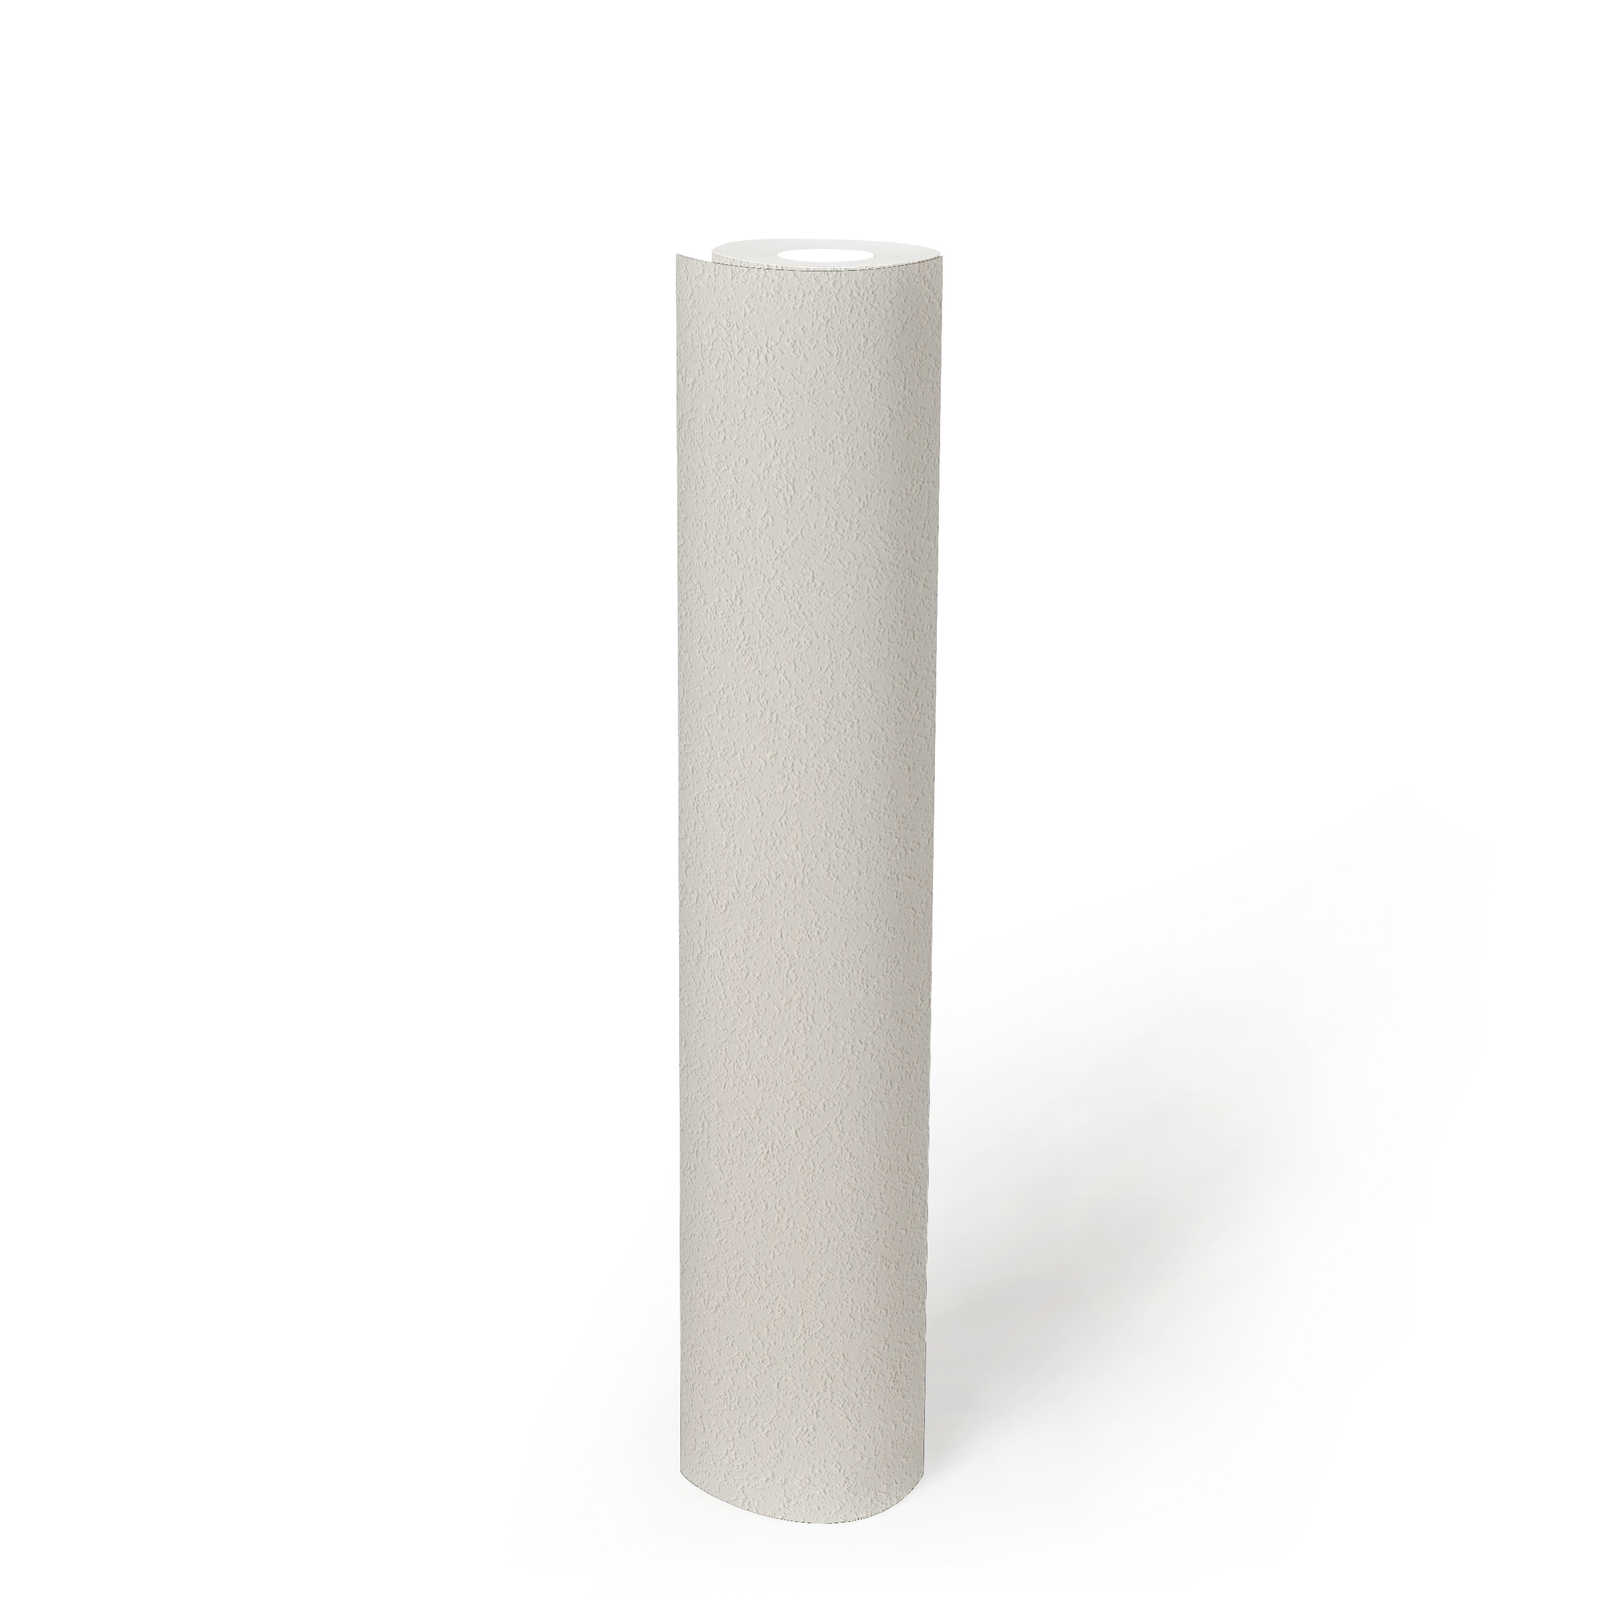             Verfbaar behangpapier met fijne zandstructuur - wit
        